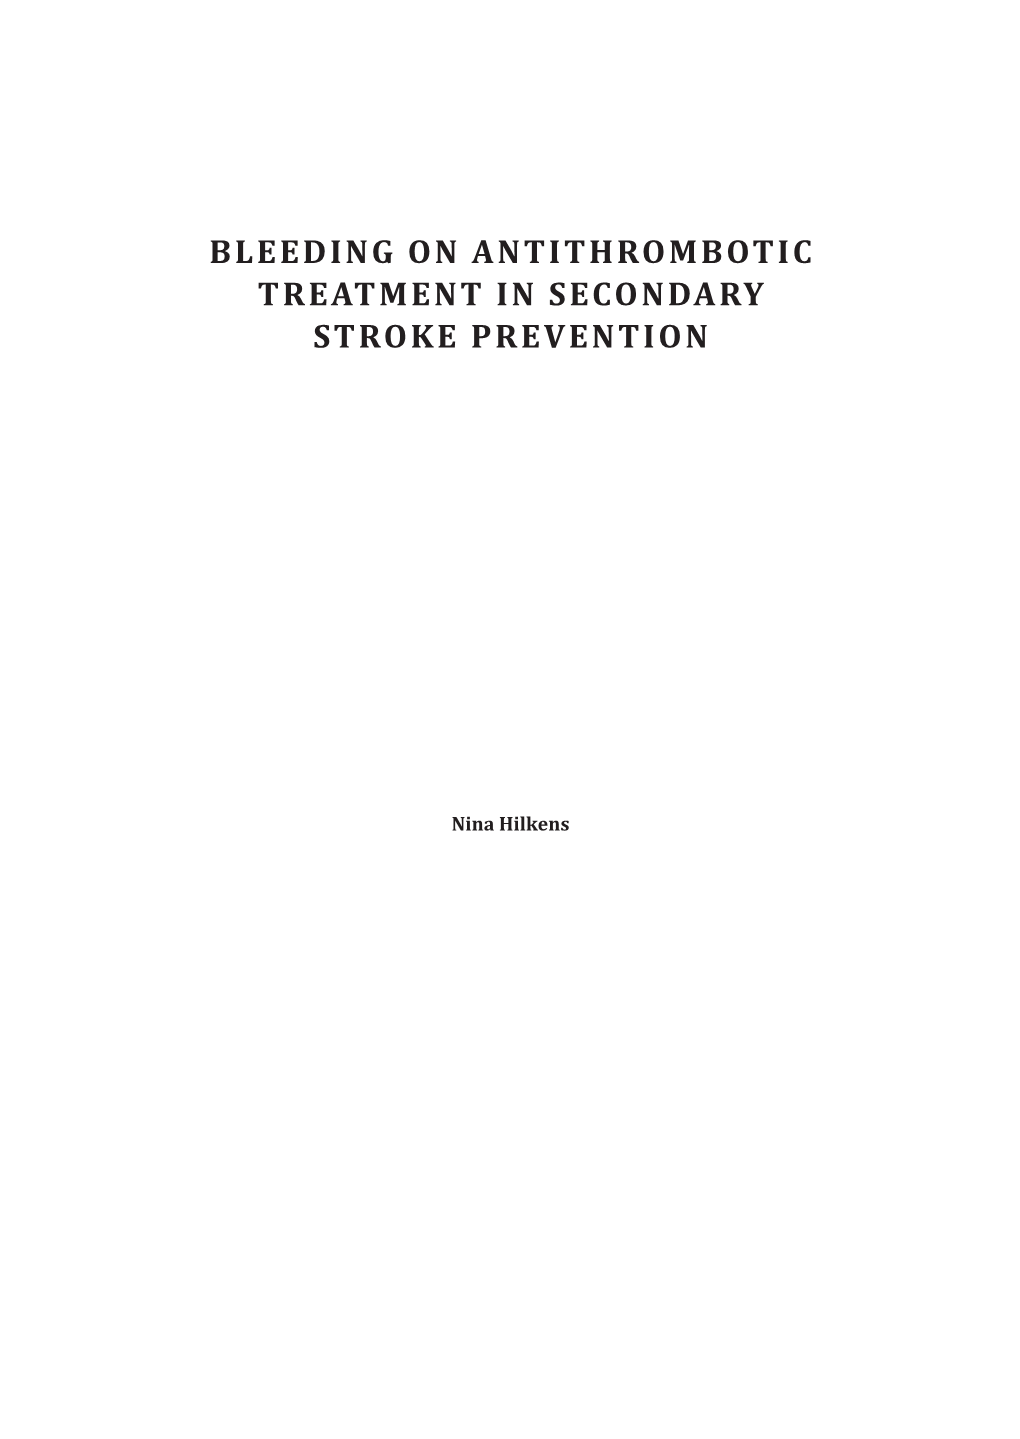 Bleeding on Antithrombotic Treatment in Secondary Stroke Prevention